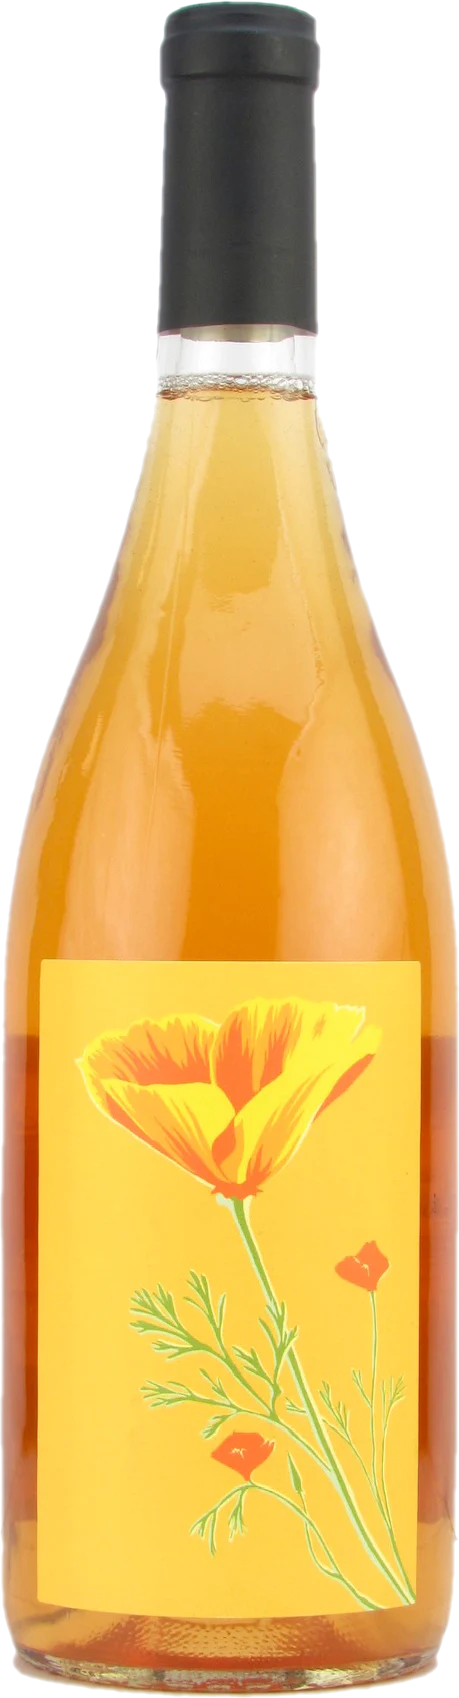 L'Aureate Orange Wine